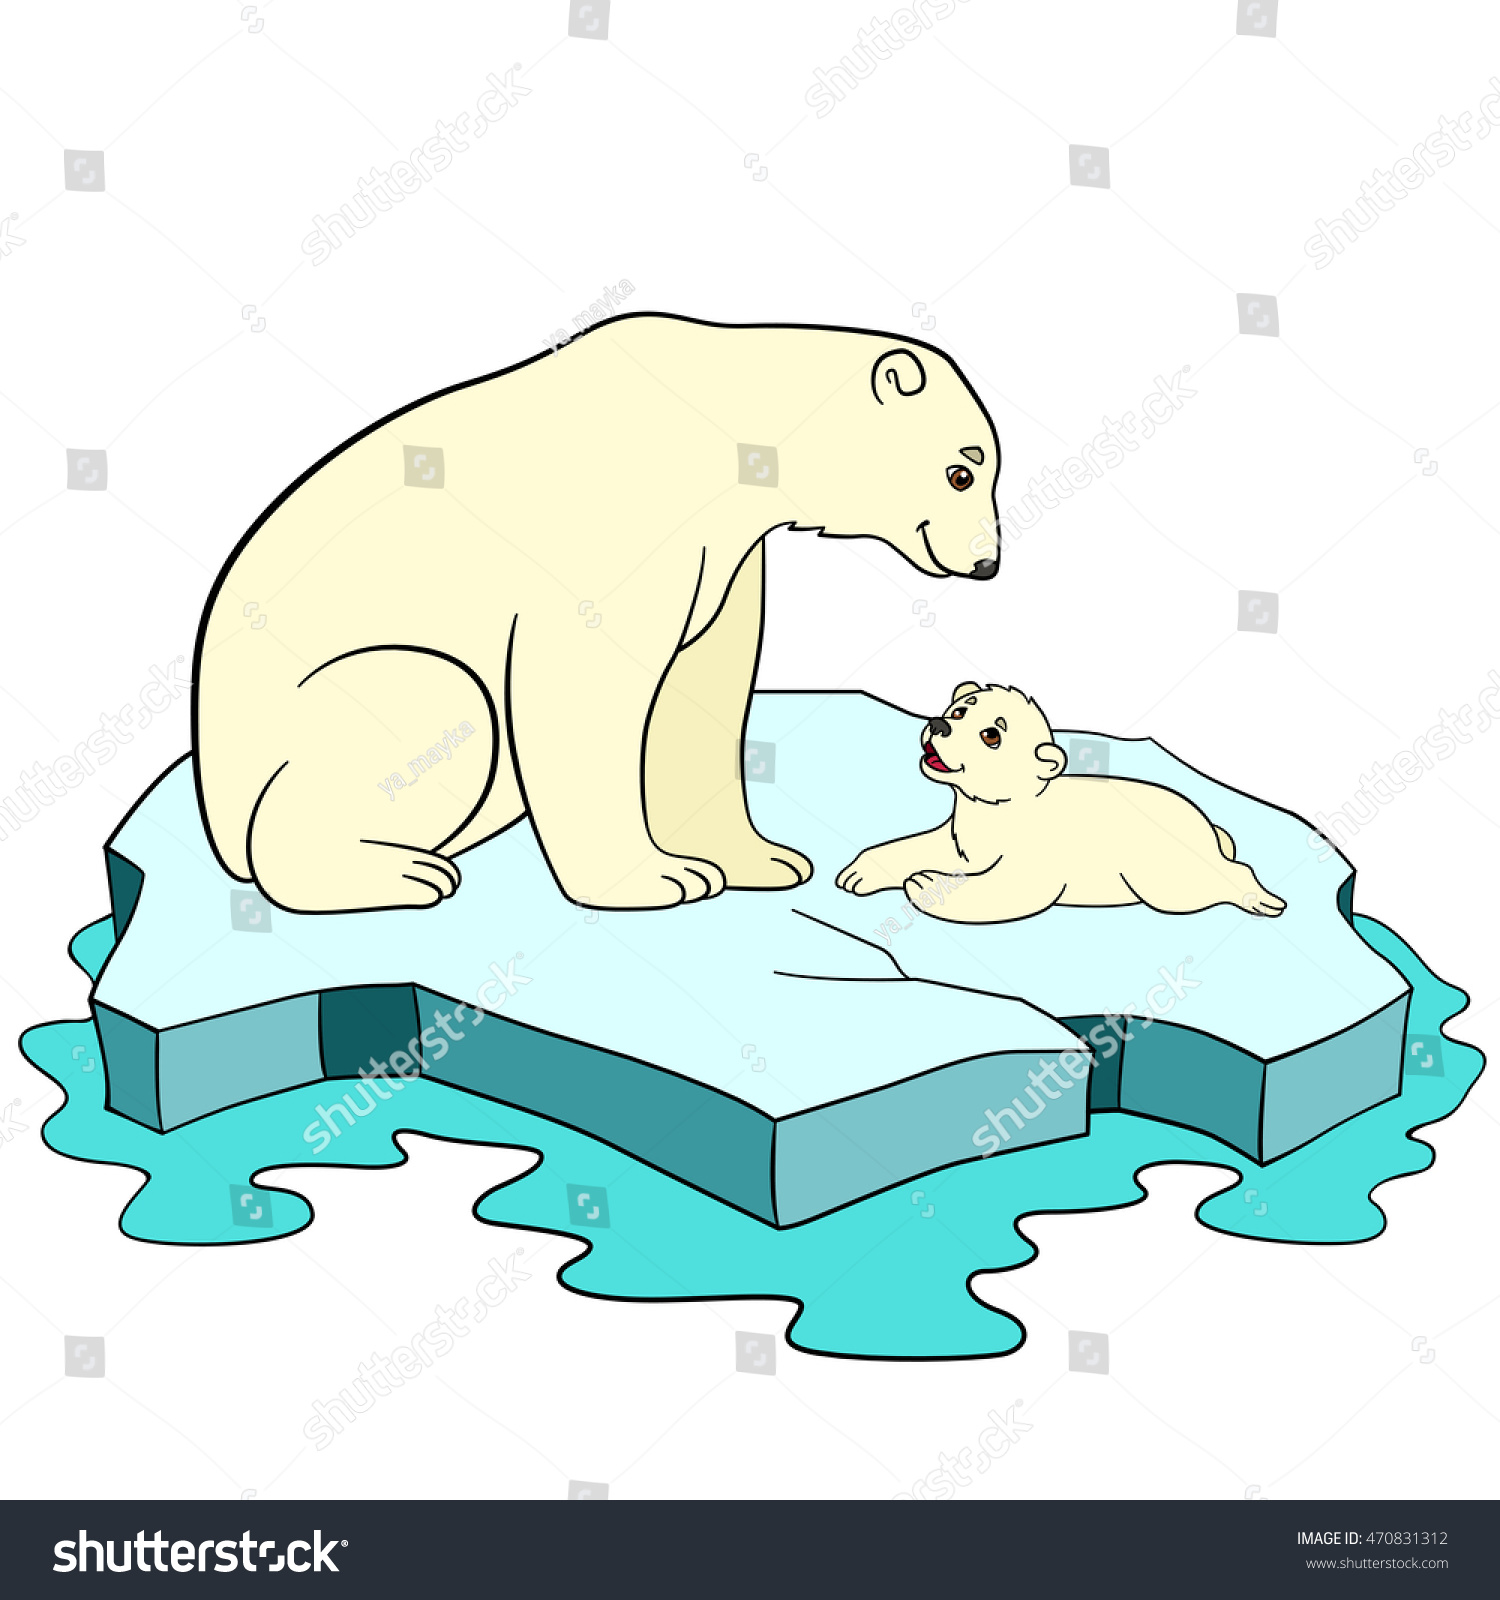 Медведи на льдине рисование